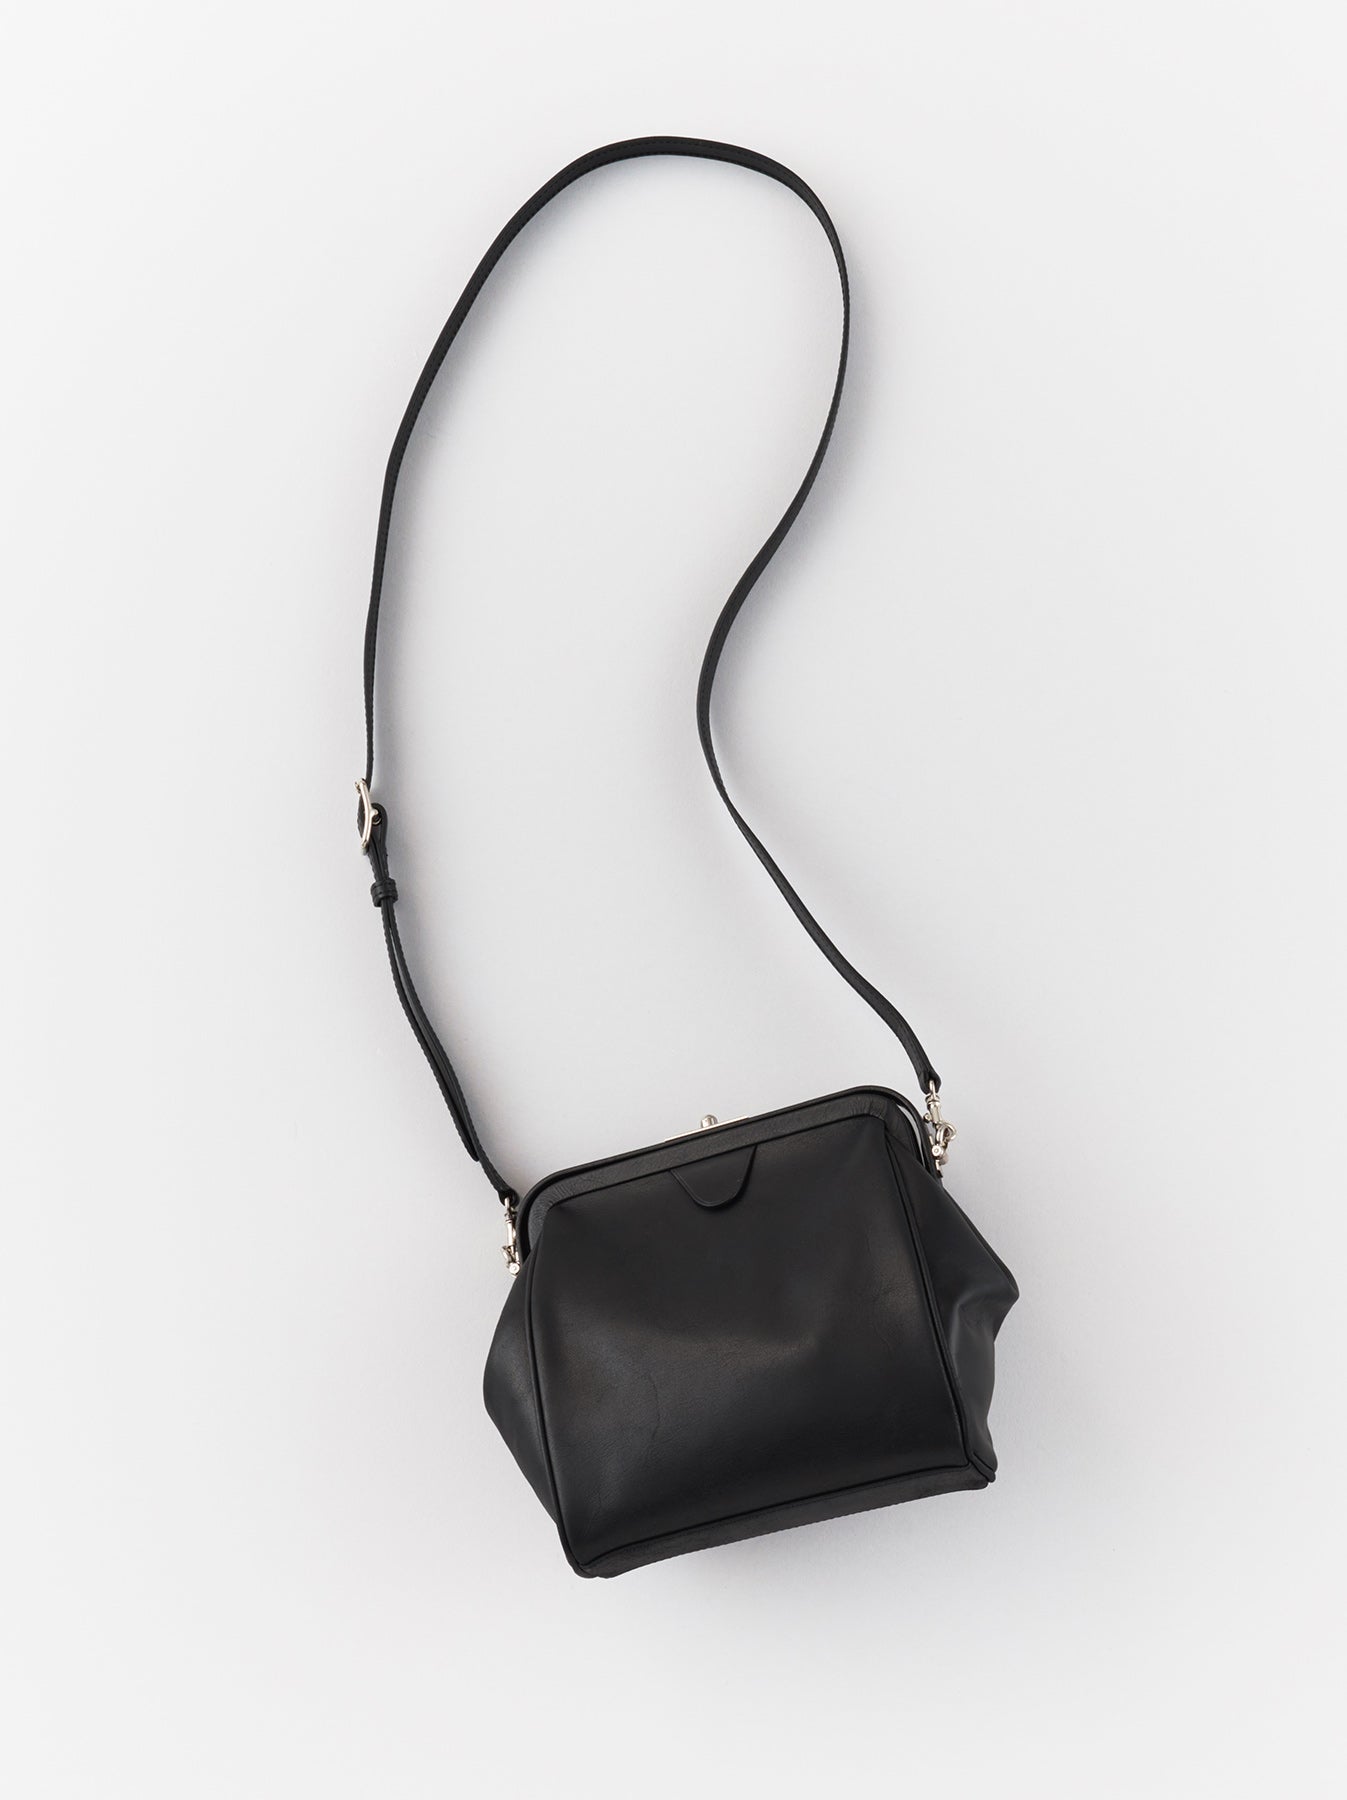 Gamaguchi shoulder bag – ARTS&SCIENCE ONLINE SELLER intl.